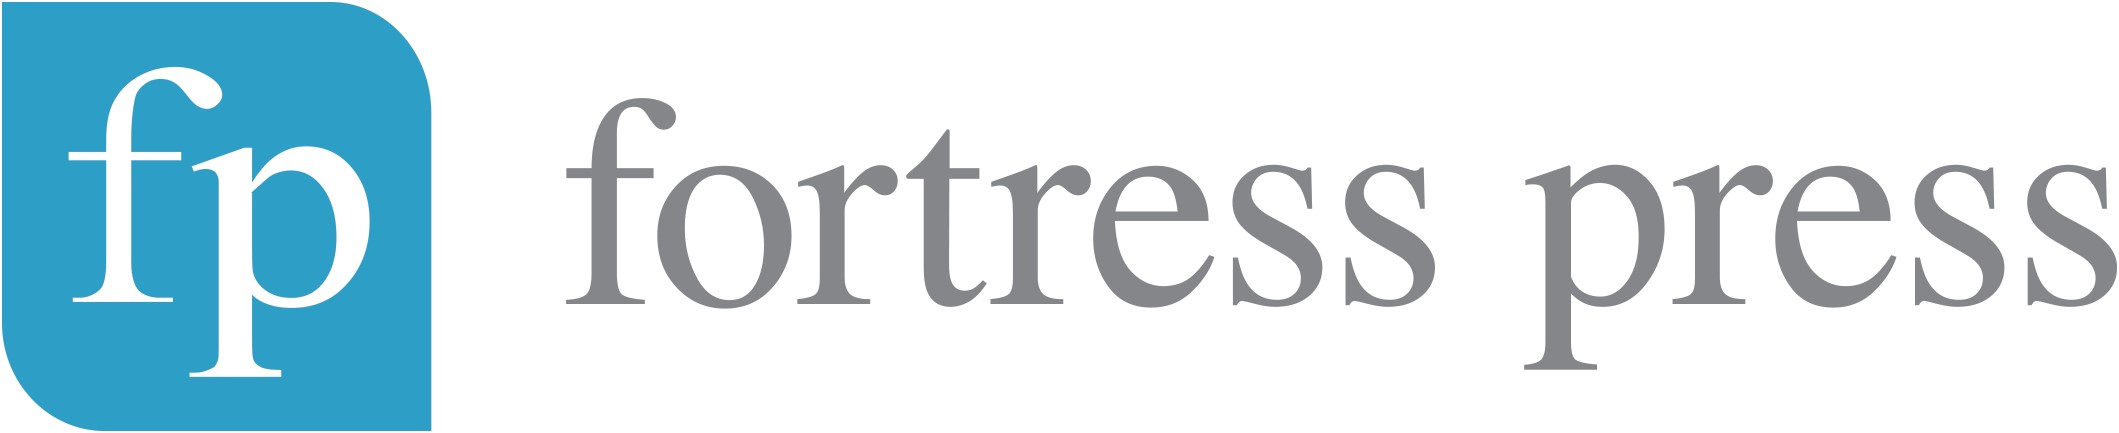 Fortress Press